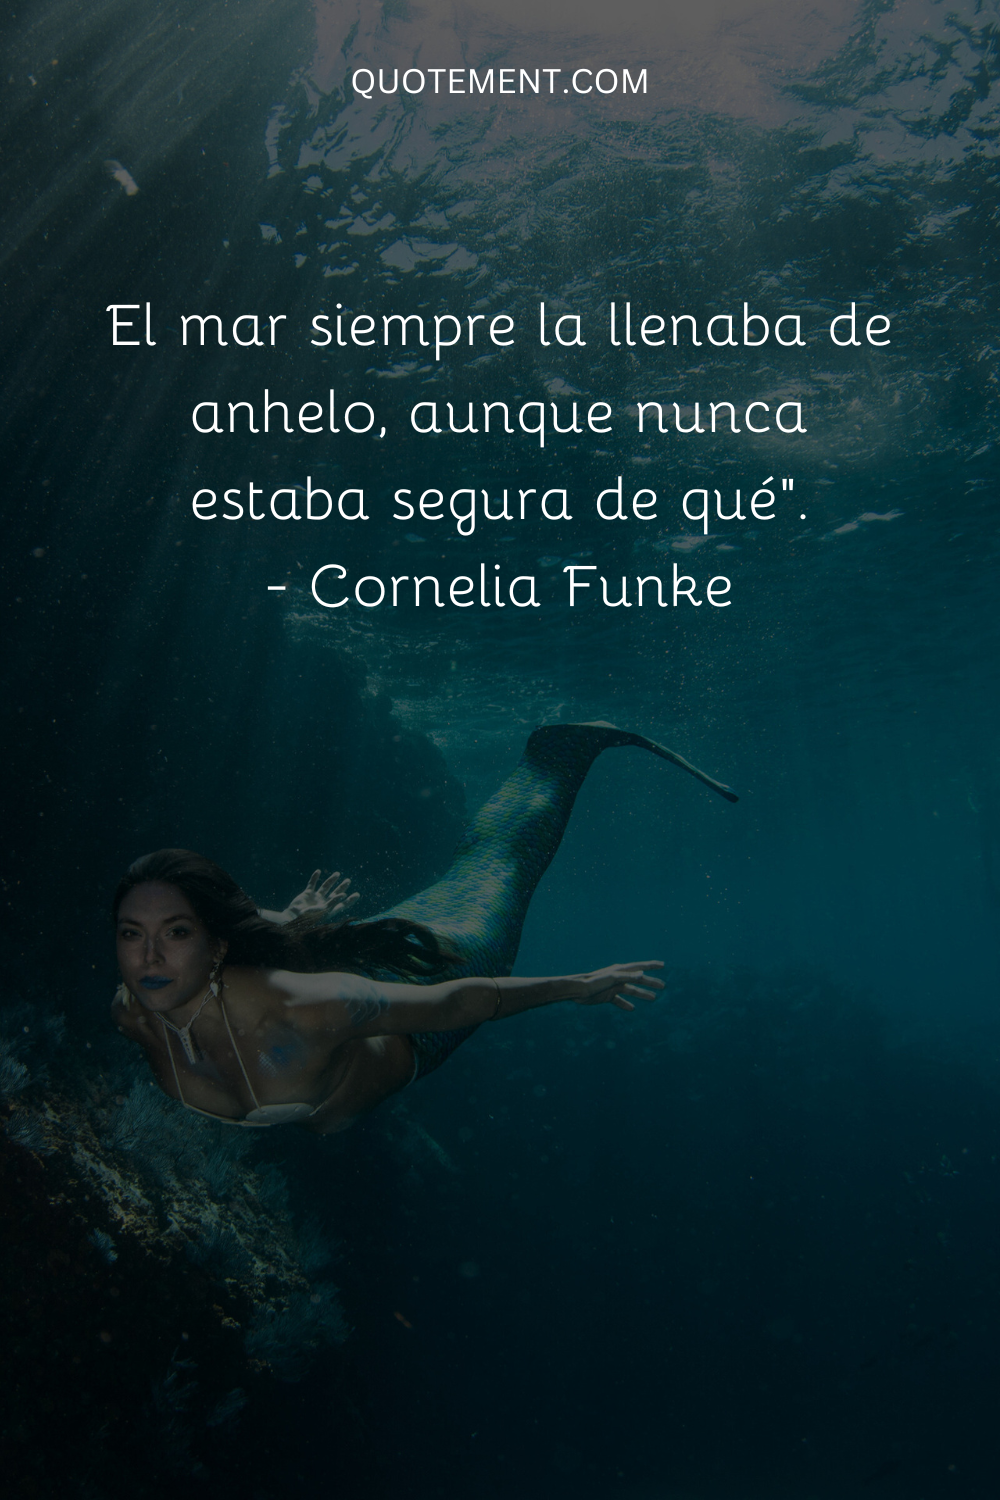 El mar siempre la llenaba de anhelo, aunque nunca estaba segura de qué". - Cornelia Funke